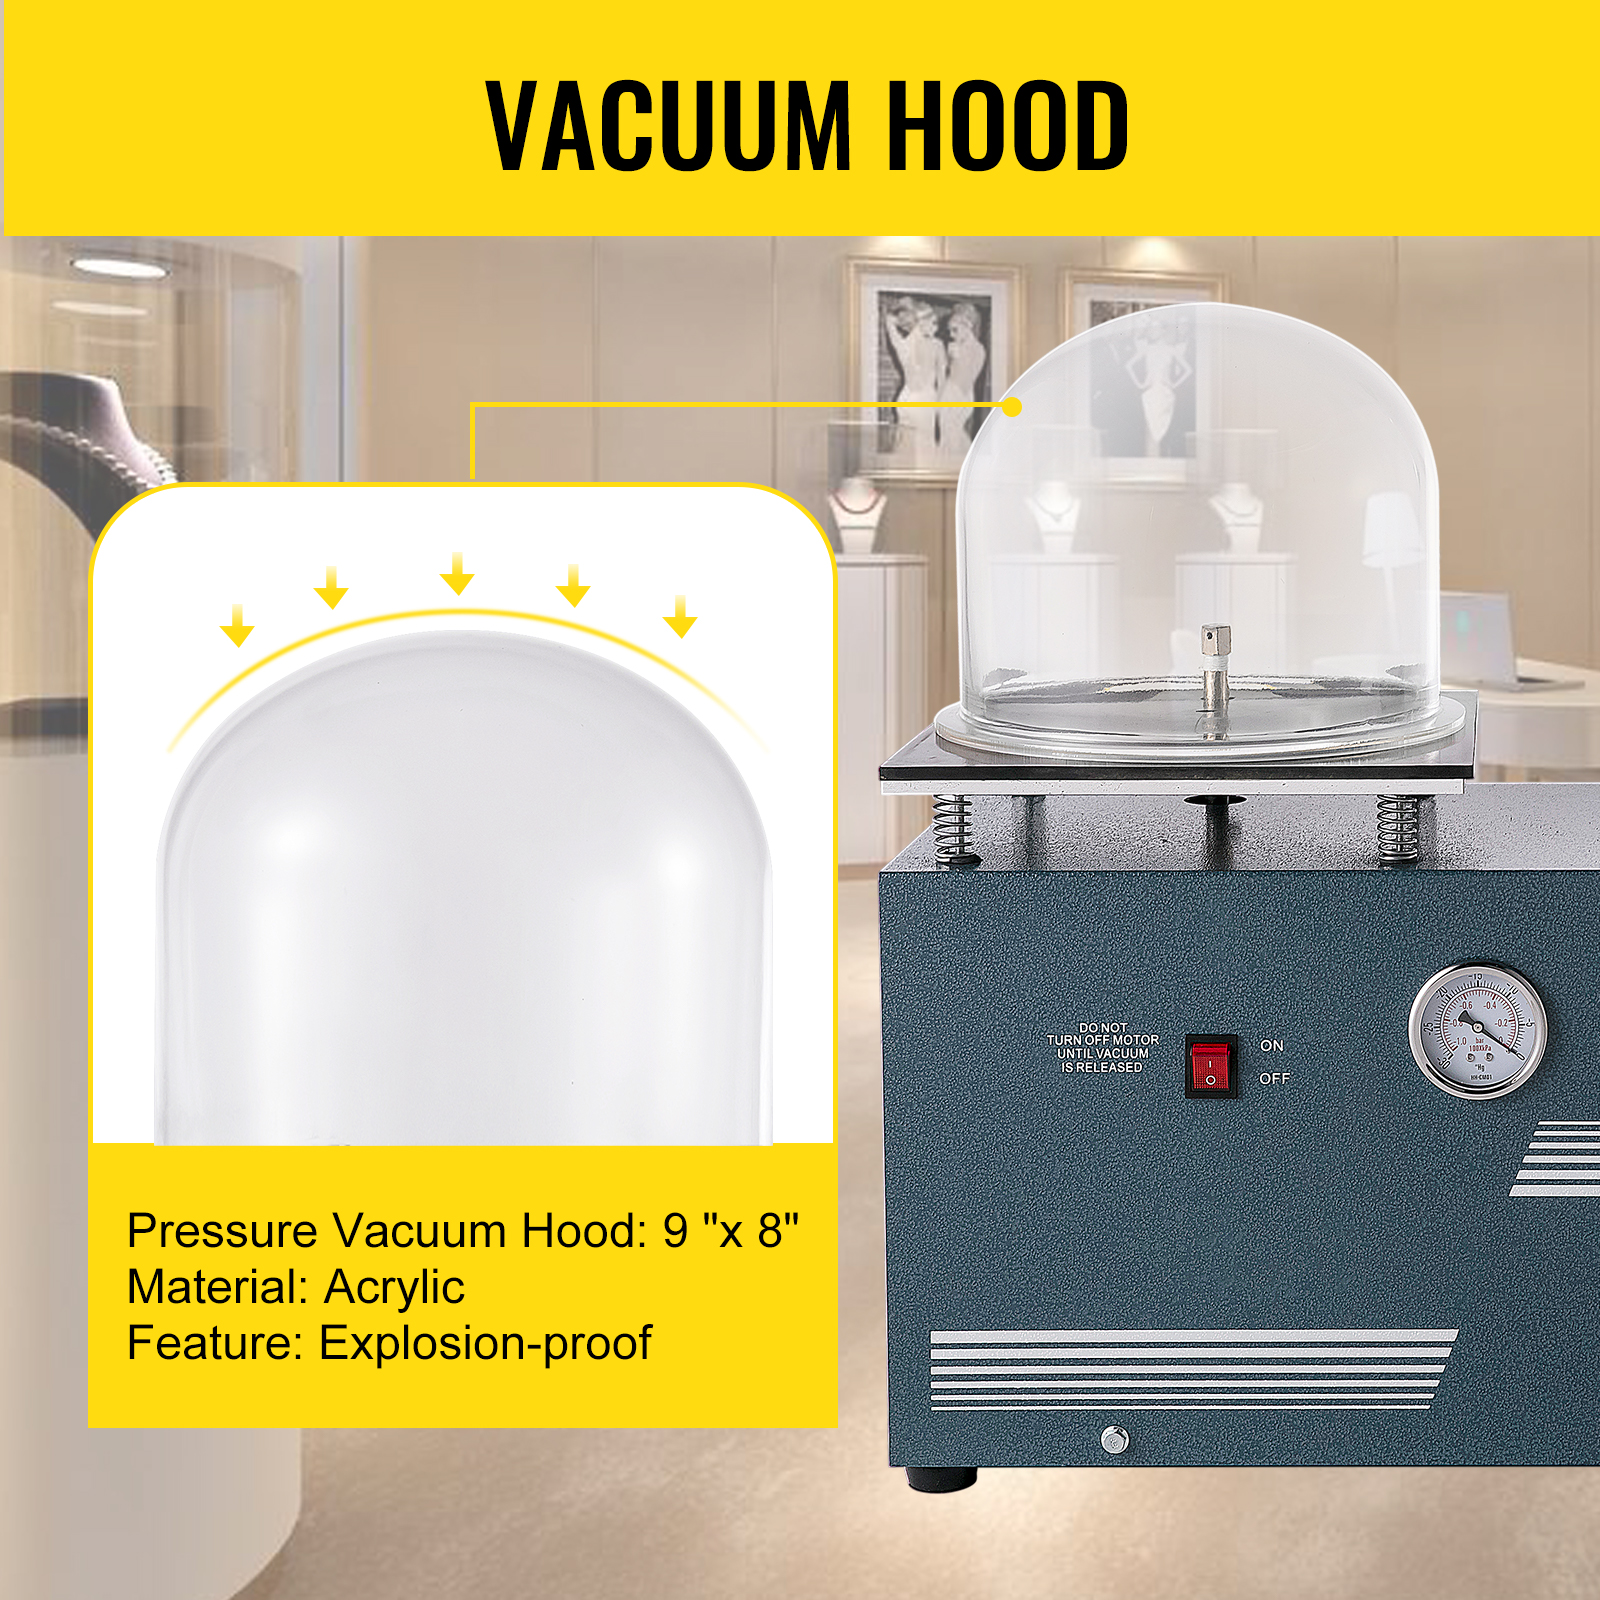 Medium Vacuum Investing & Casting Machine 4L,HH-CM03 - 110V